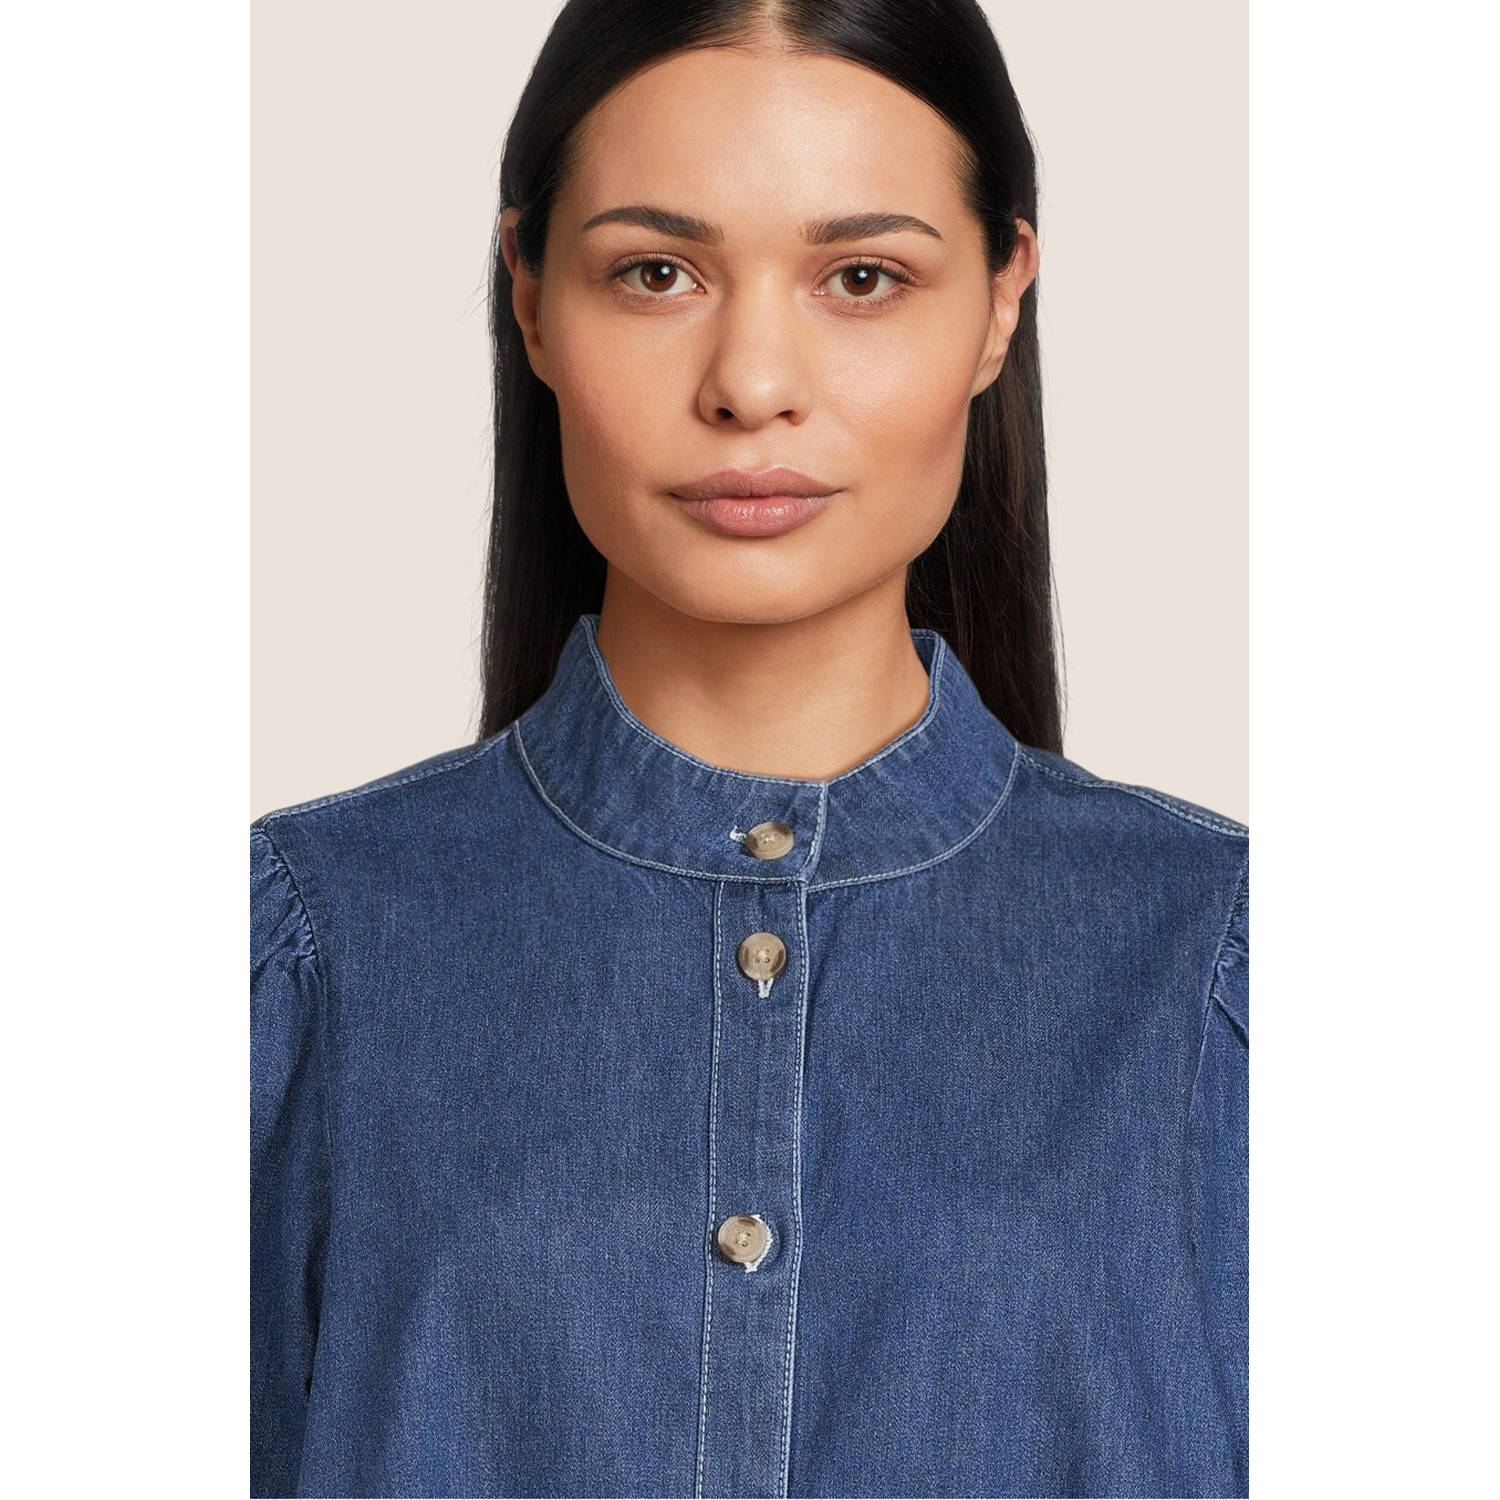 MSCH Copenhagen halter spijker blousejurk MSCHShayla medium blue denim